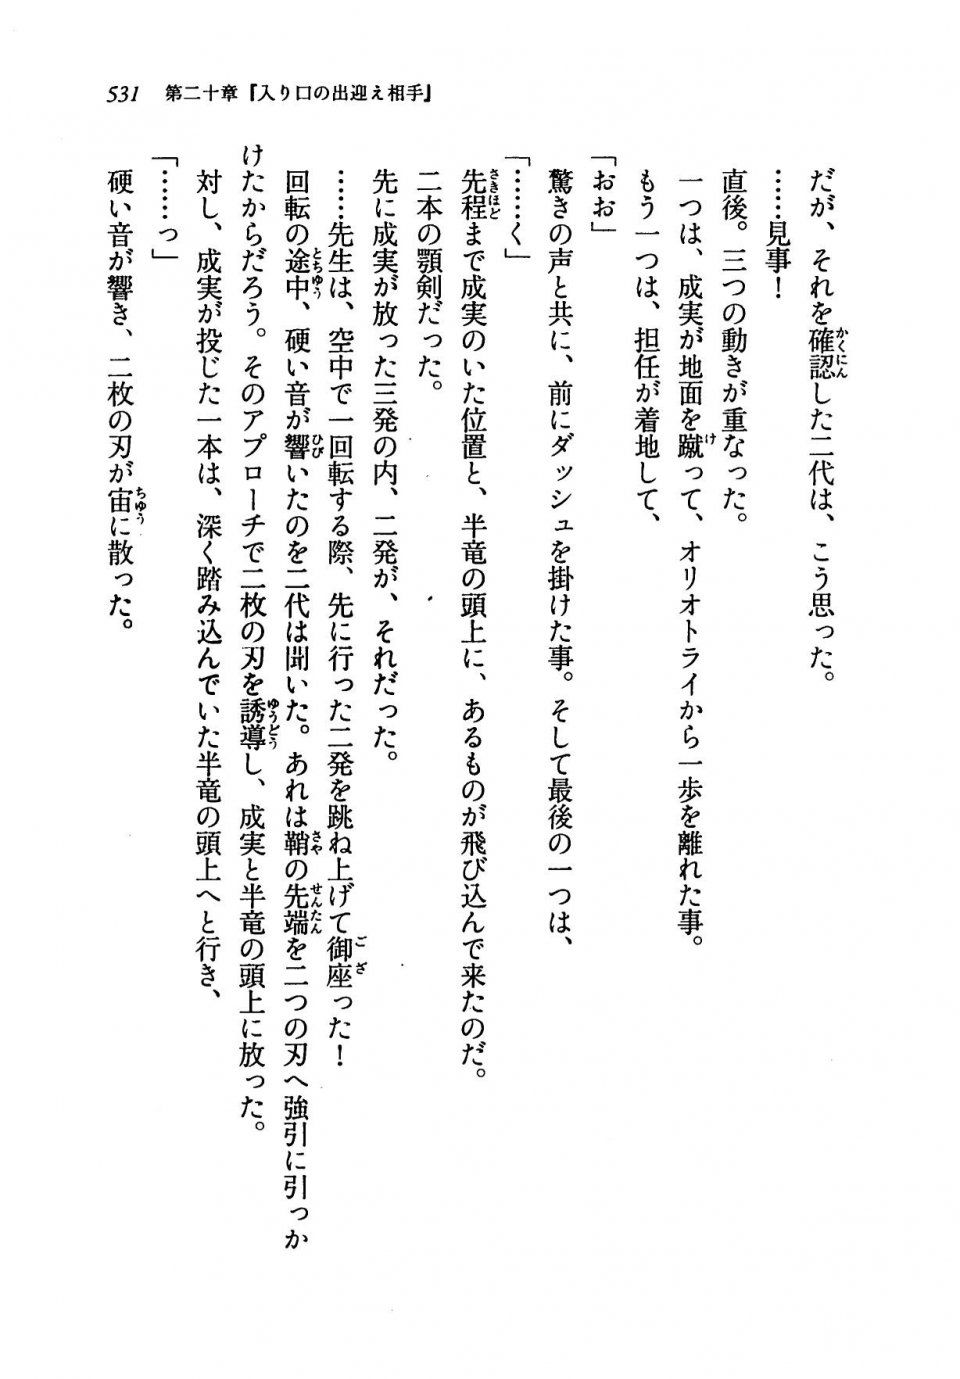 Kyoukai Senjou no Horizon LN Vol 19(8A) - Photo #531